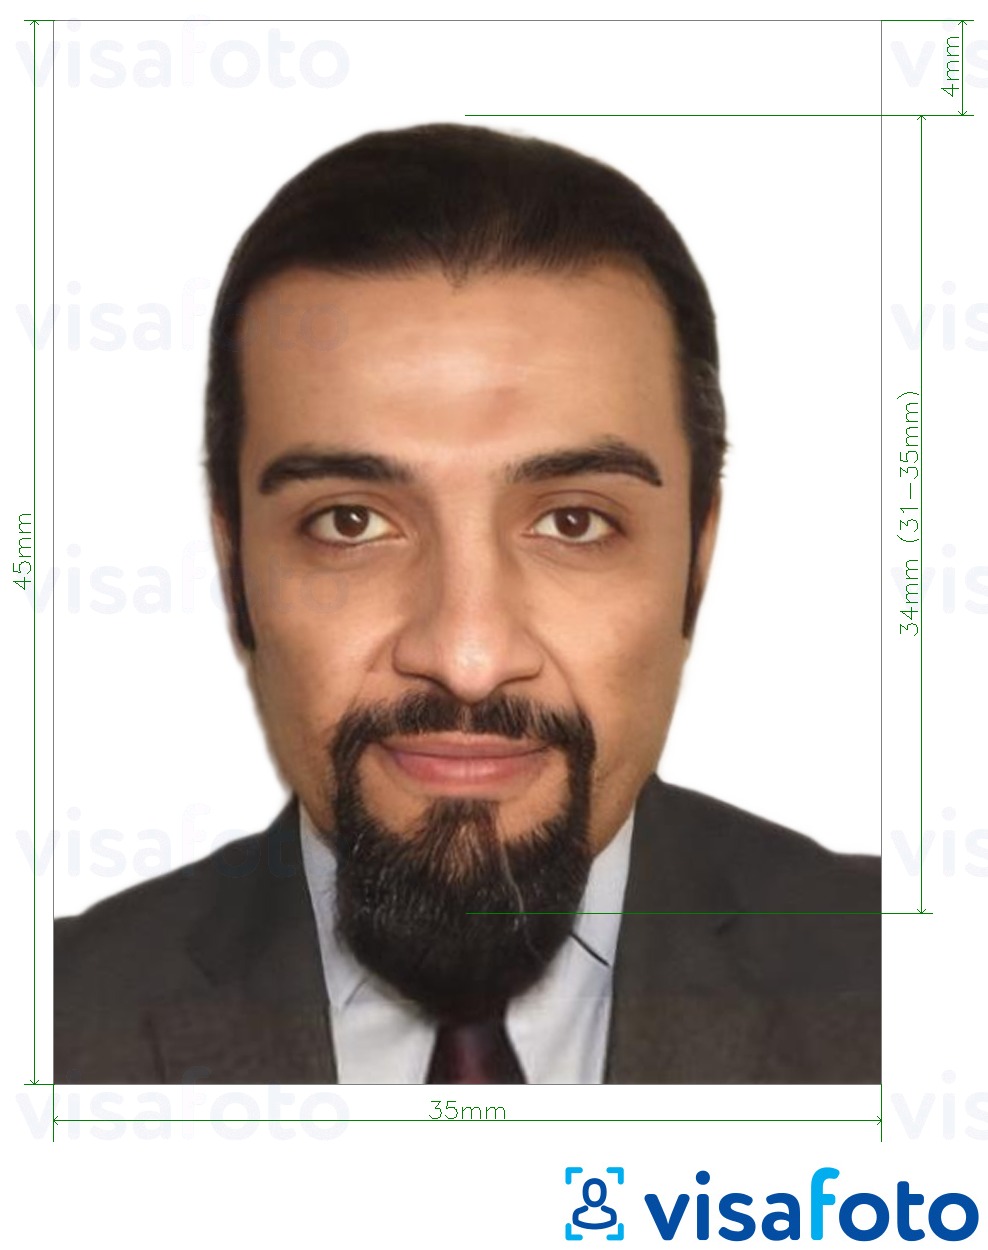 Voorbeeld van foto voor UAE ID-kaart online 35x45 mm met exacte maatspecificatie